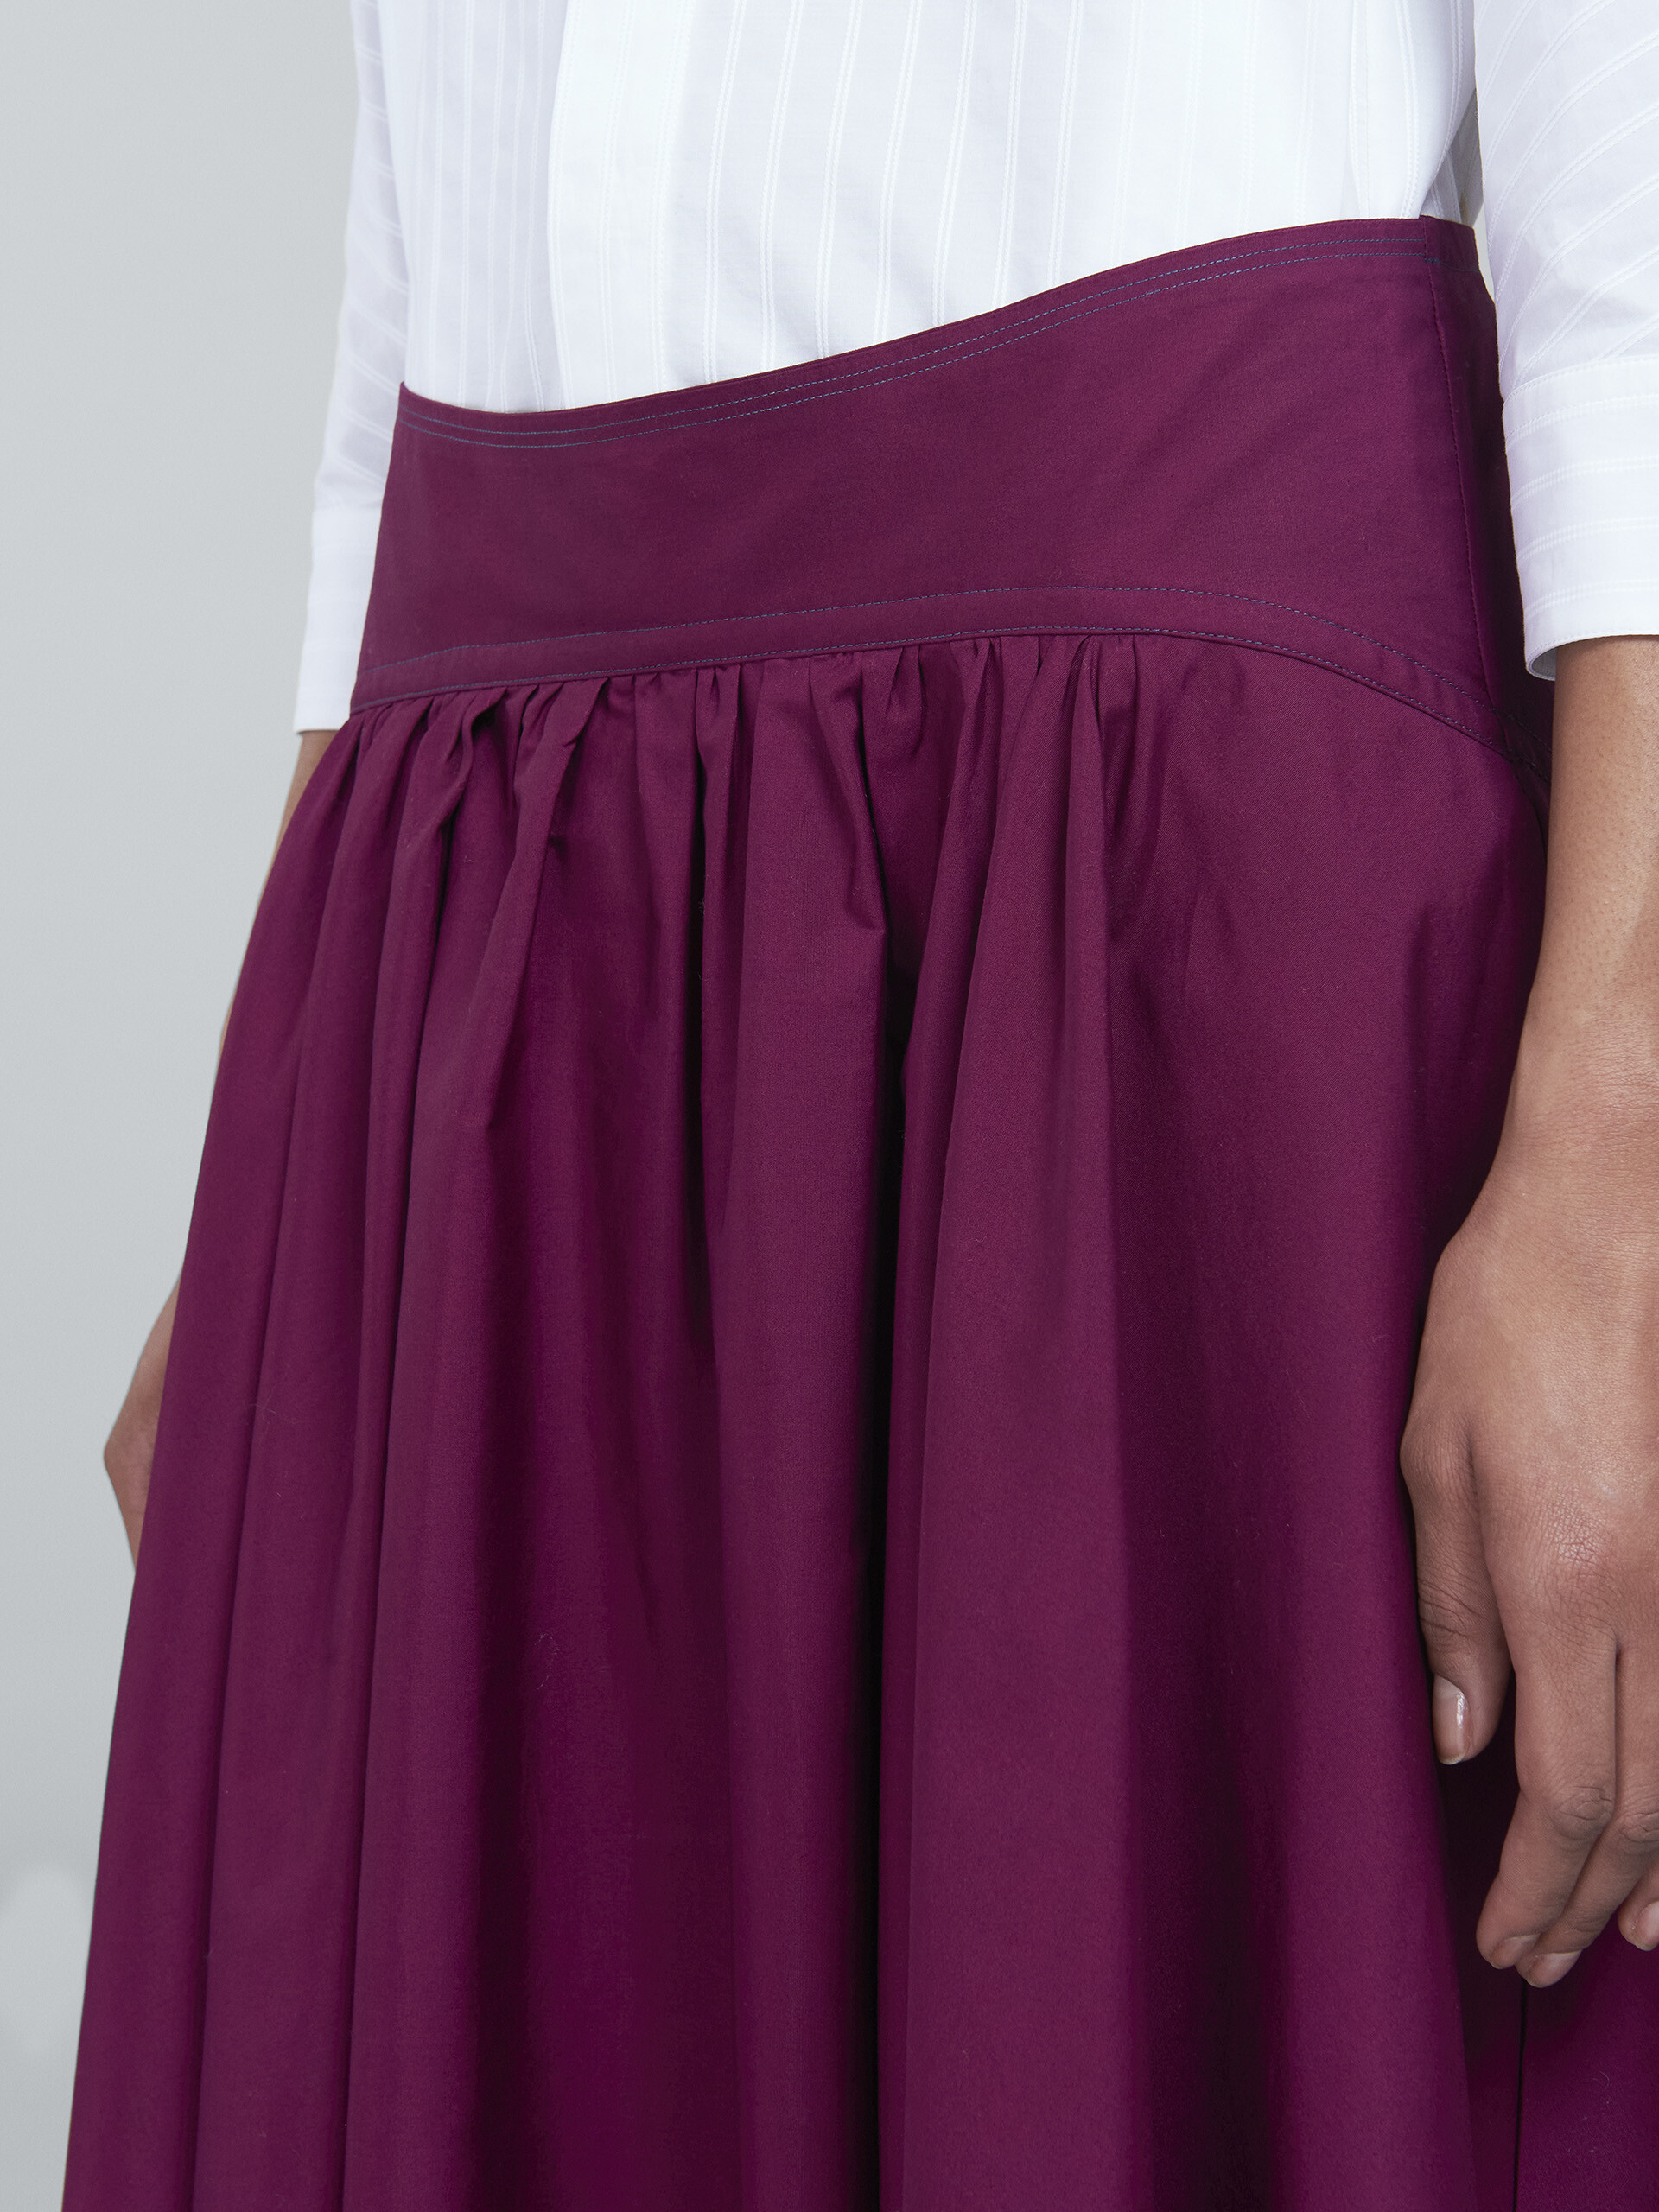 Poplin full skirt - Skirts - Image 4